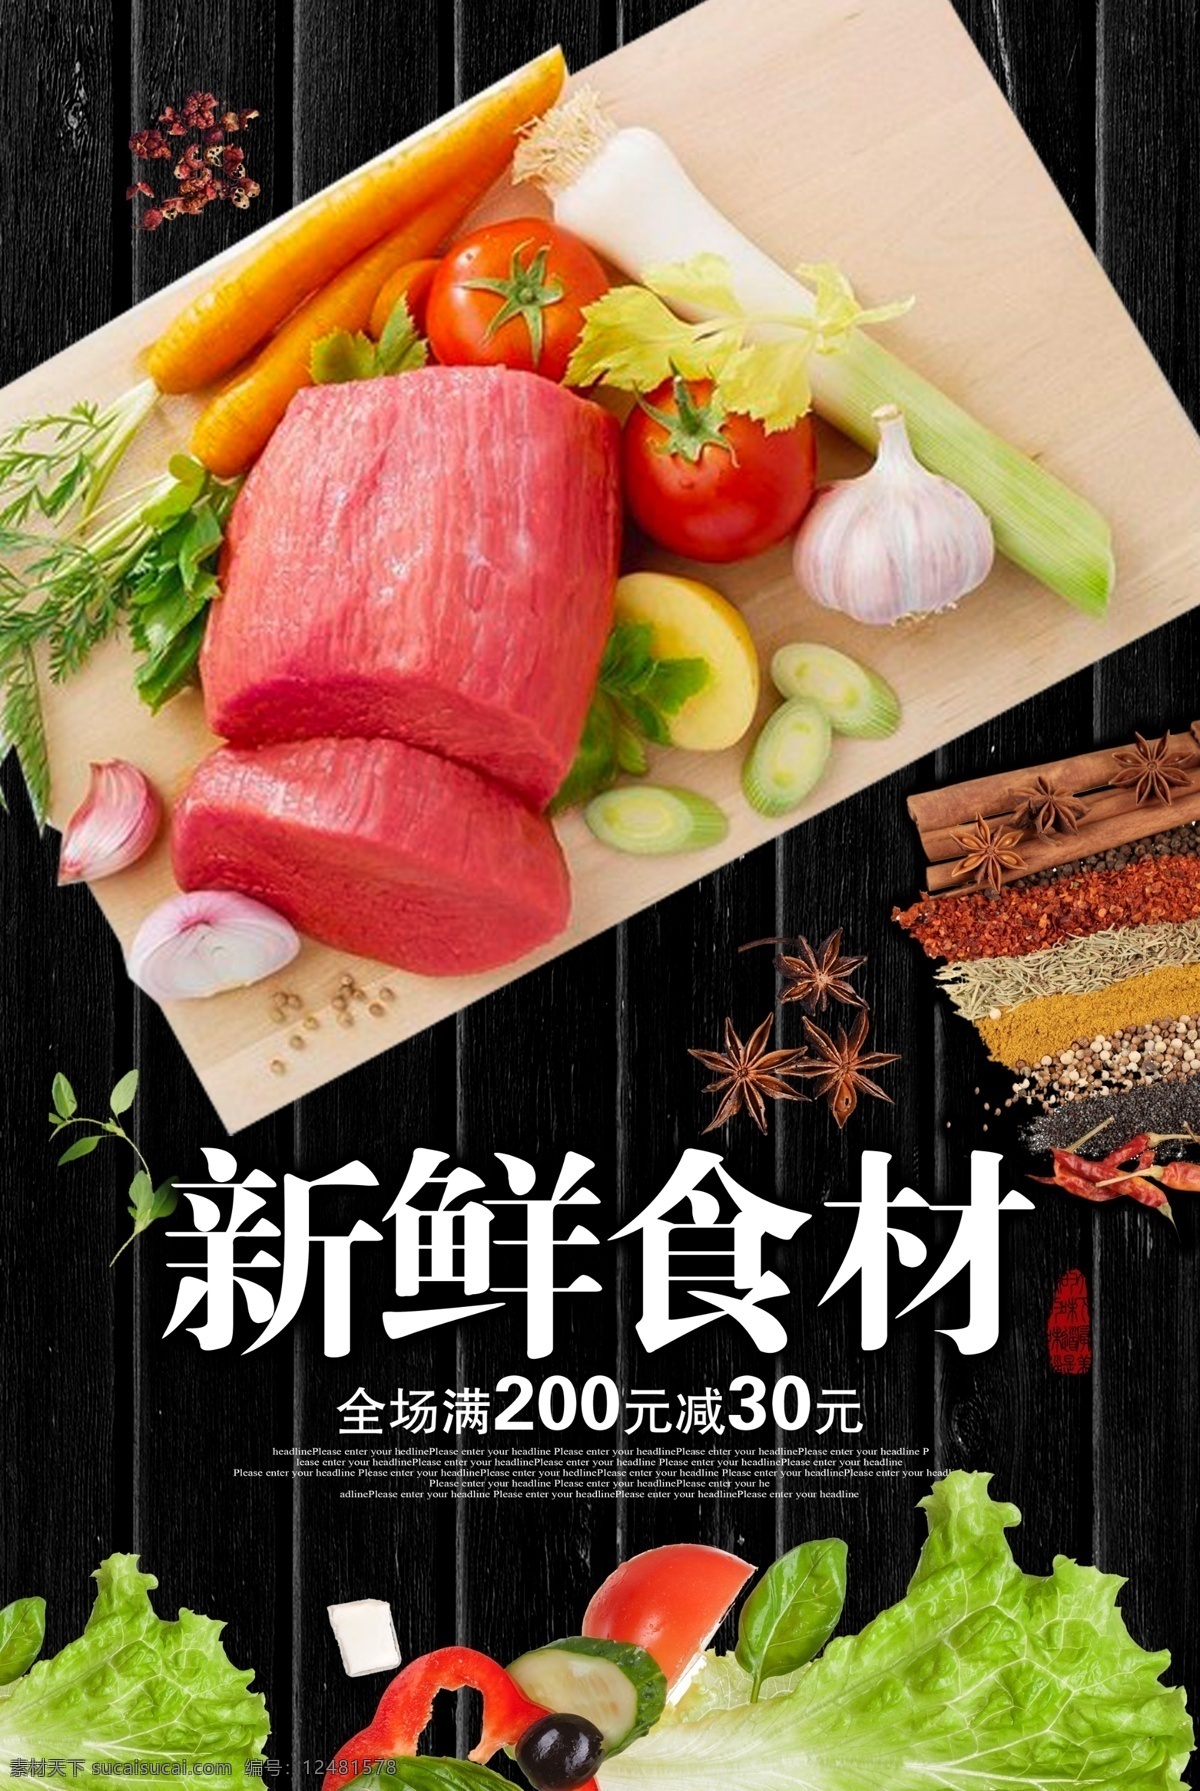 新鲜 食 材 餐饮 牛肉 宣传海报 新鲜食材 宣传 海报 餐饮美食 类